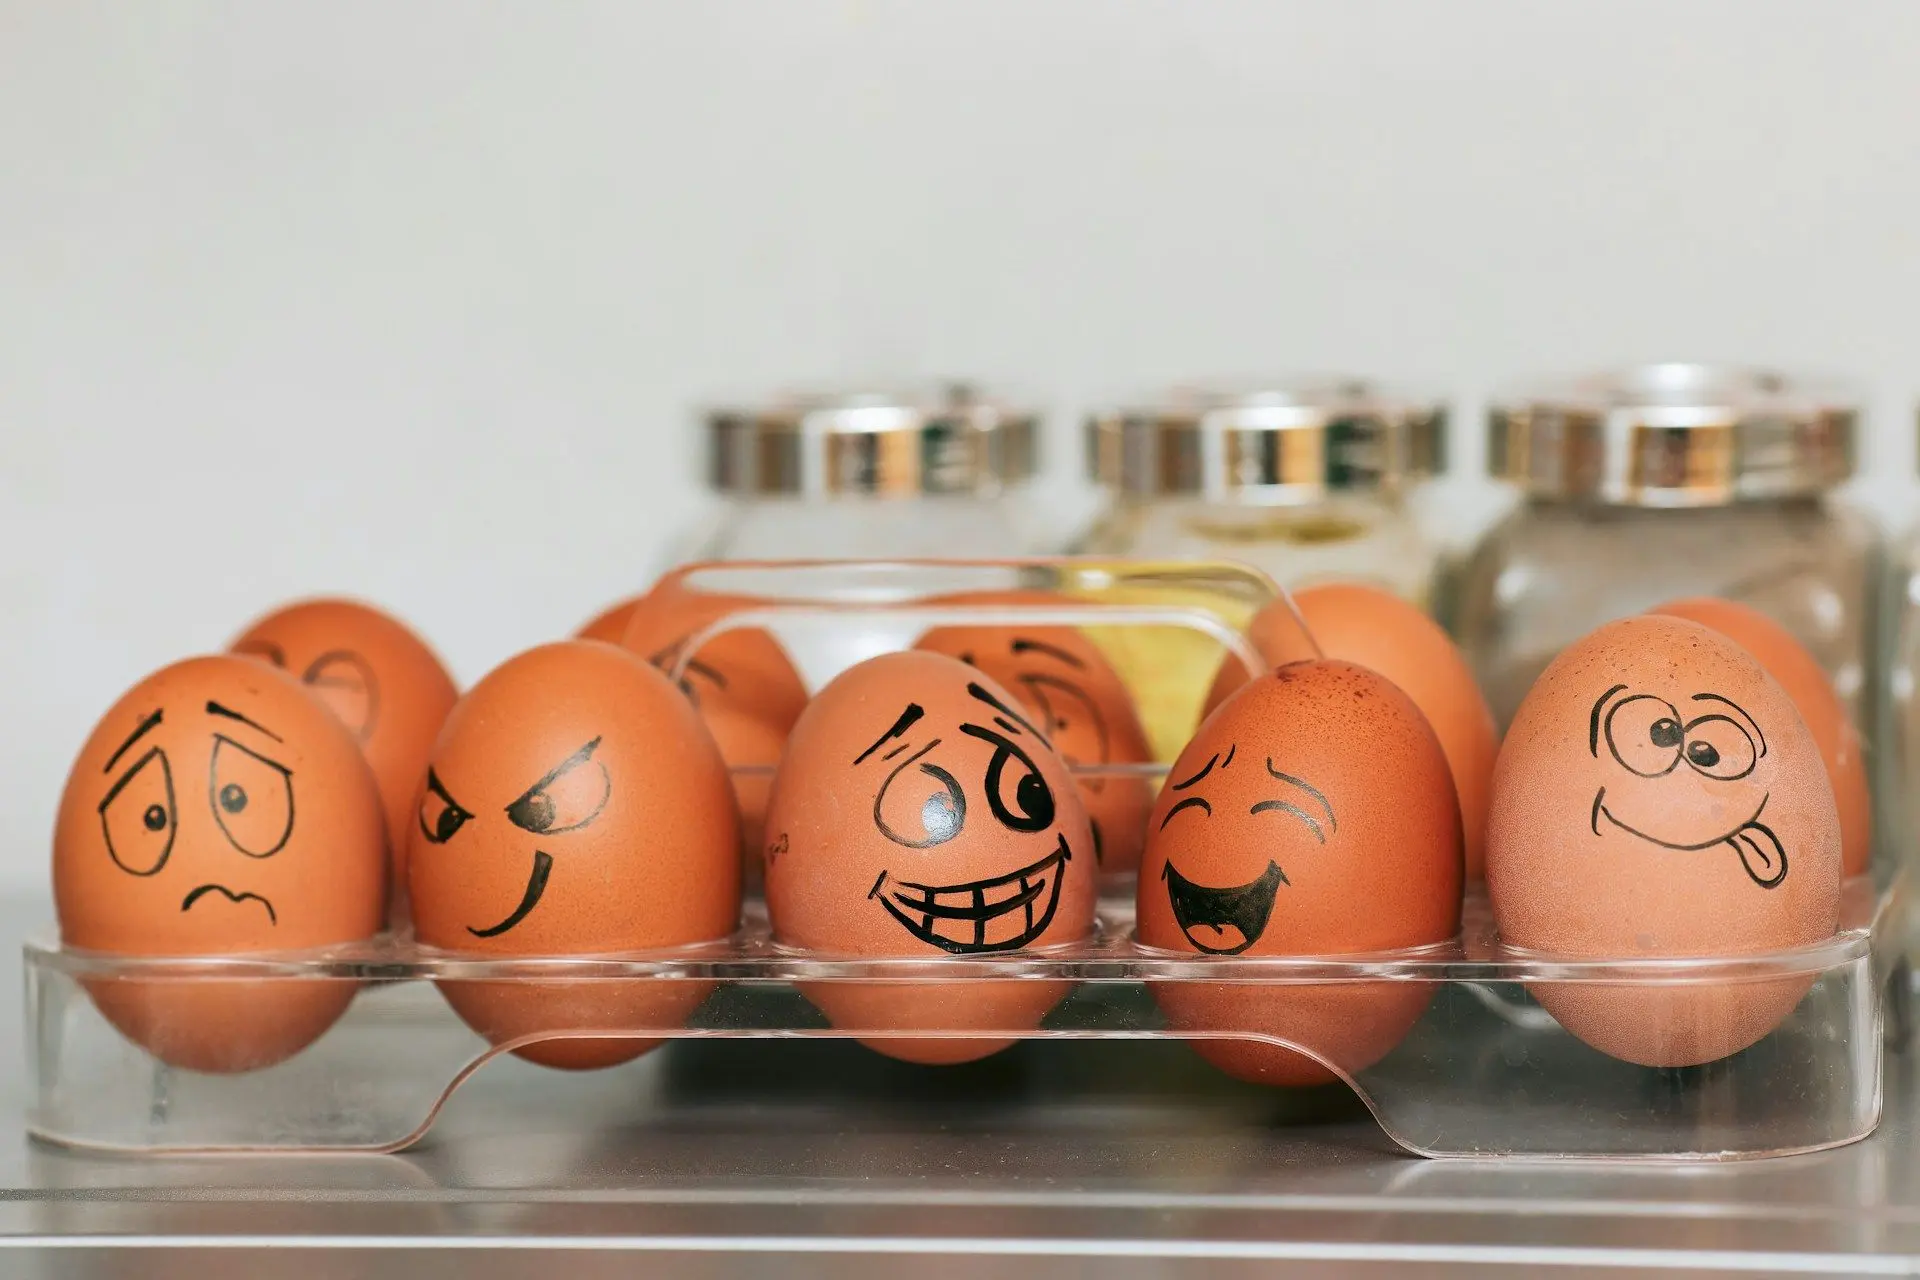 Визначено реальний термін зберігання яєць, який відрізняється від того, що зазначено на упакуванні.